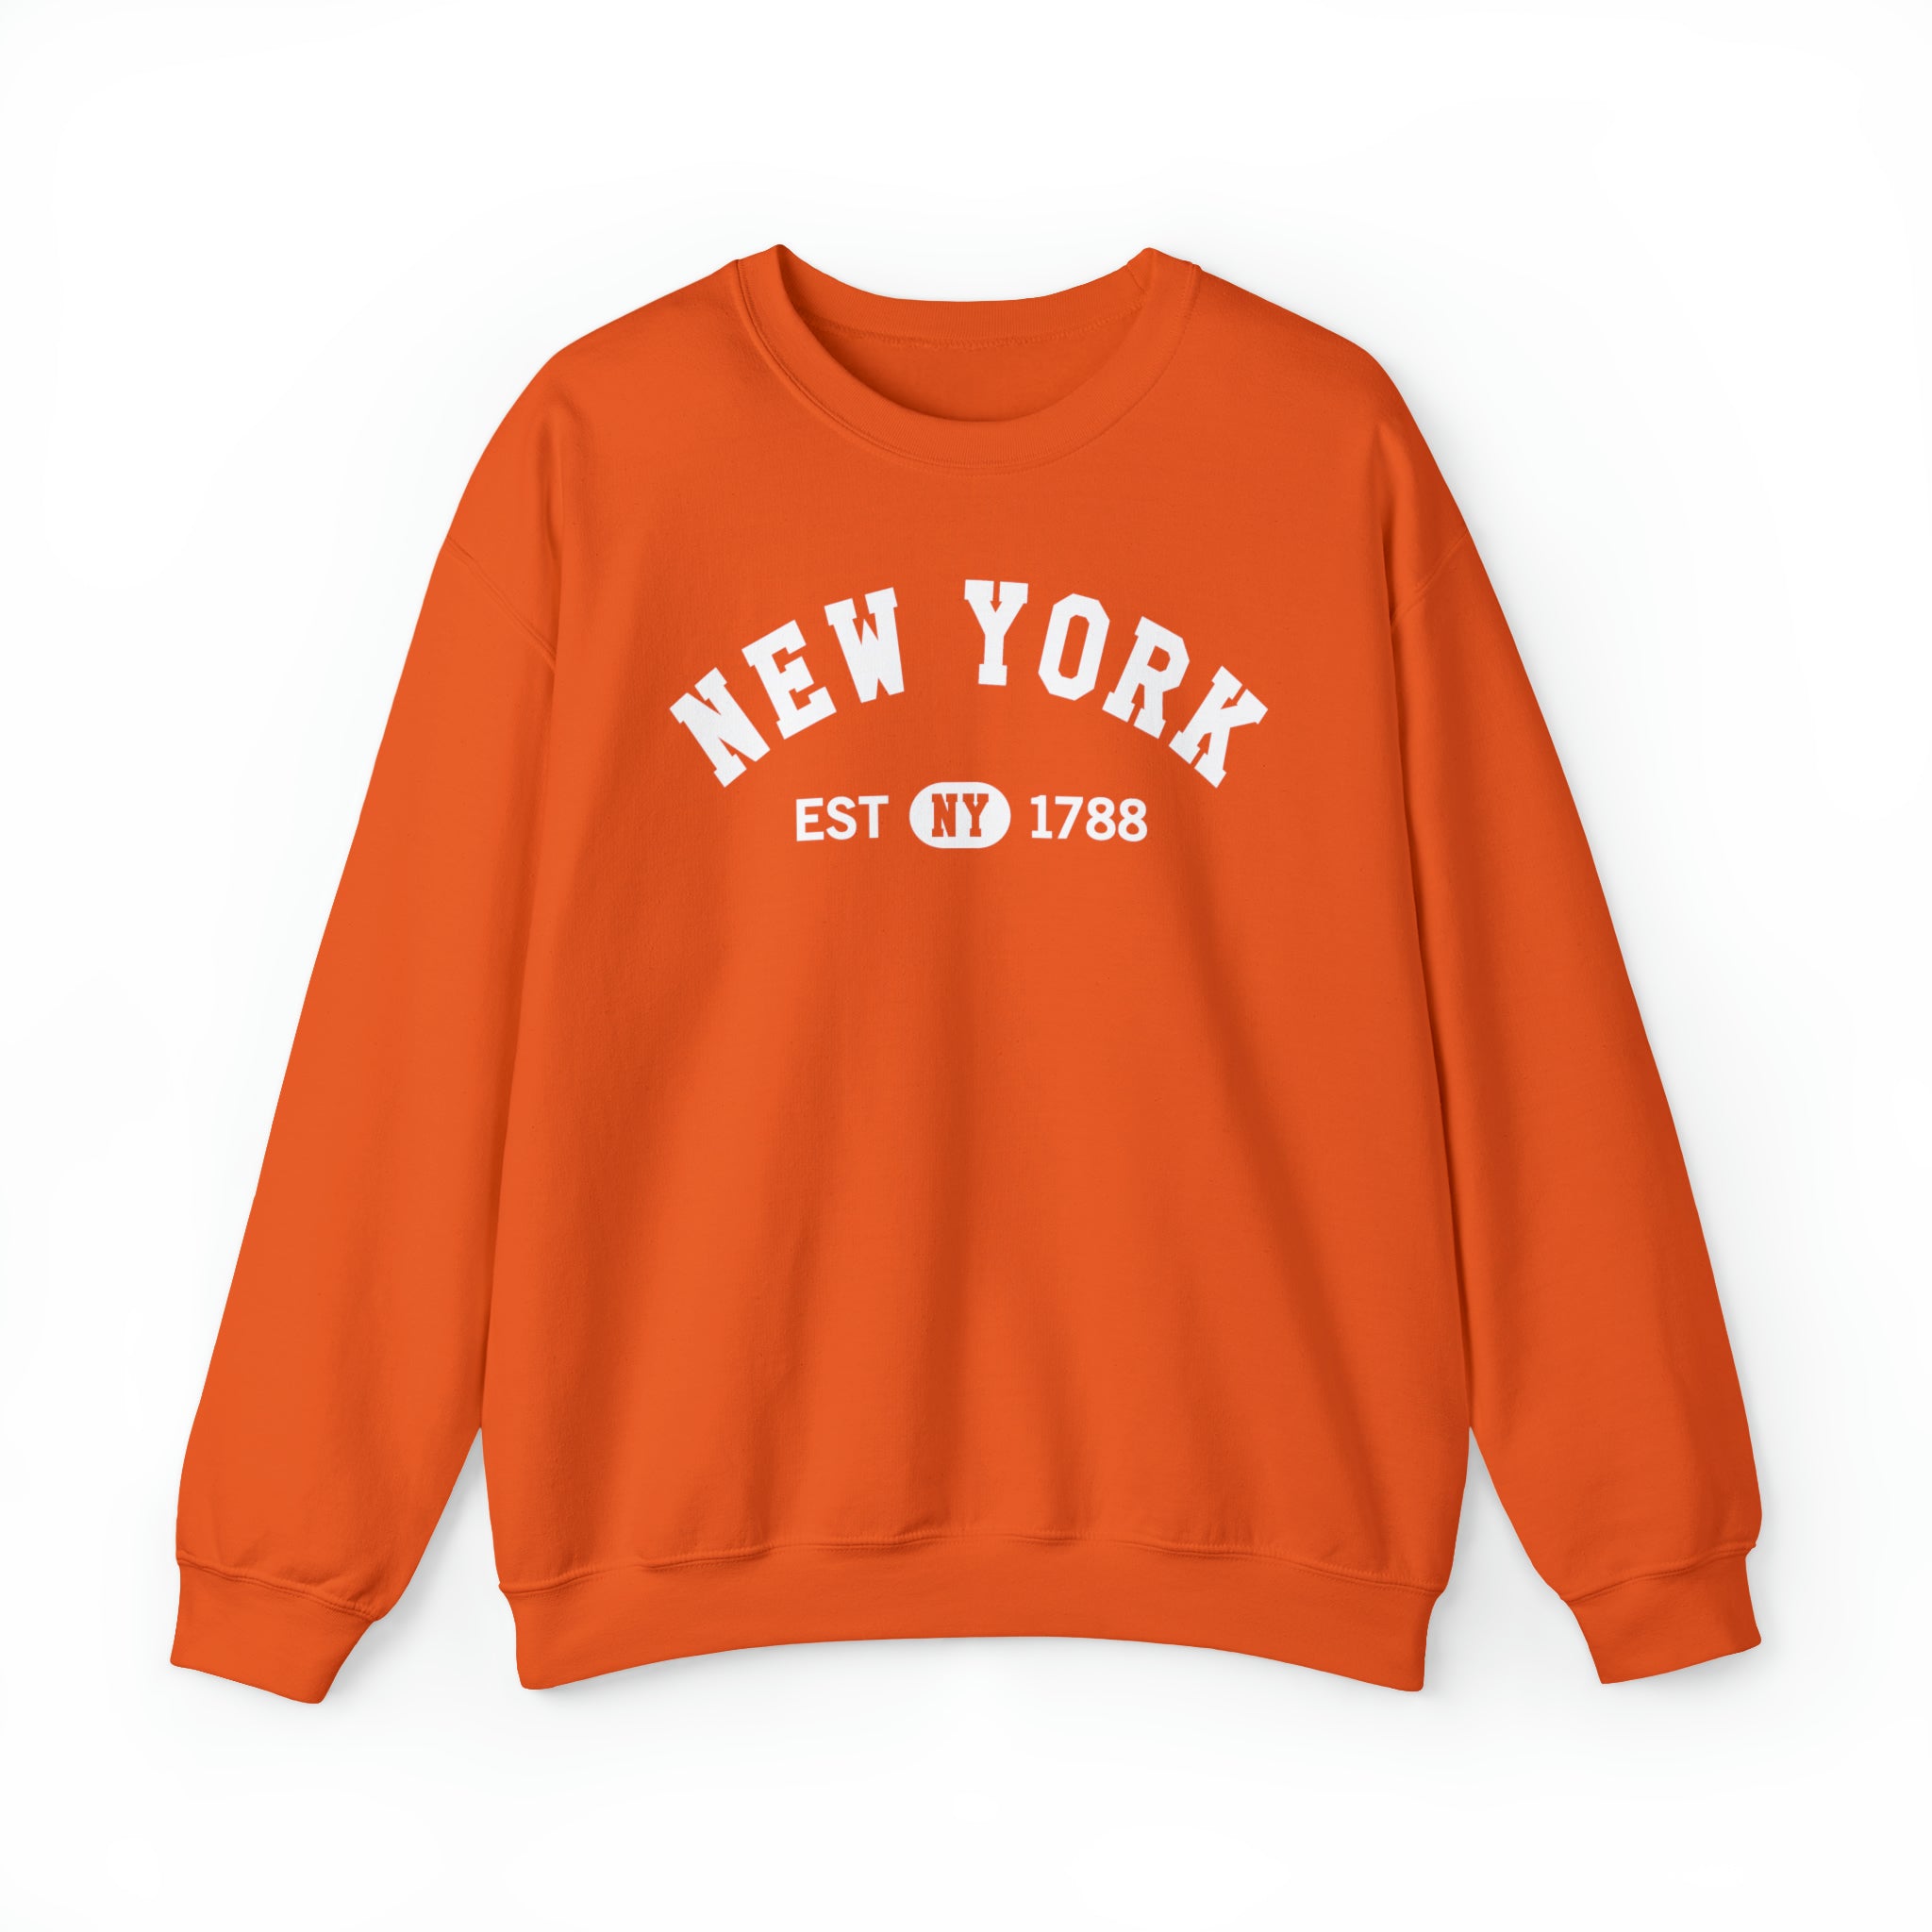 NY New York State Sweatshirt, I Love NY Vintage Graphic USA 